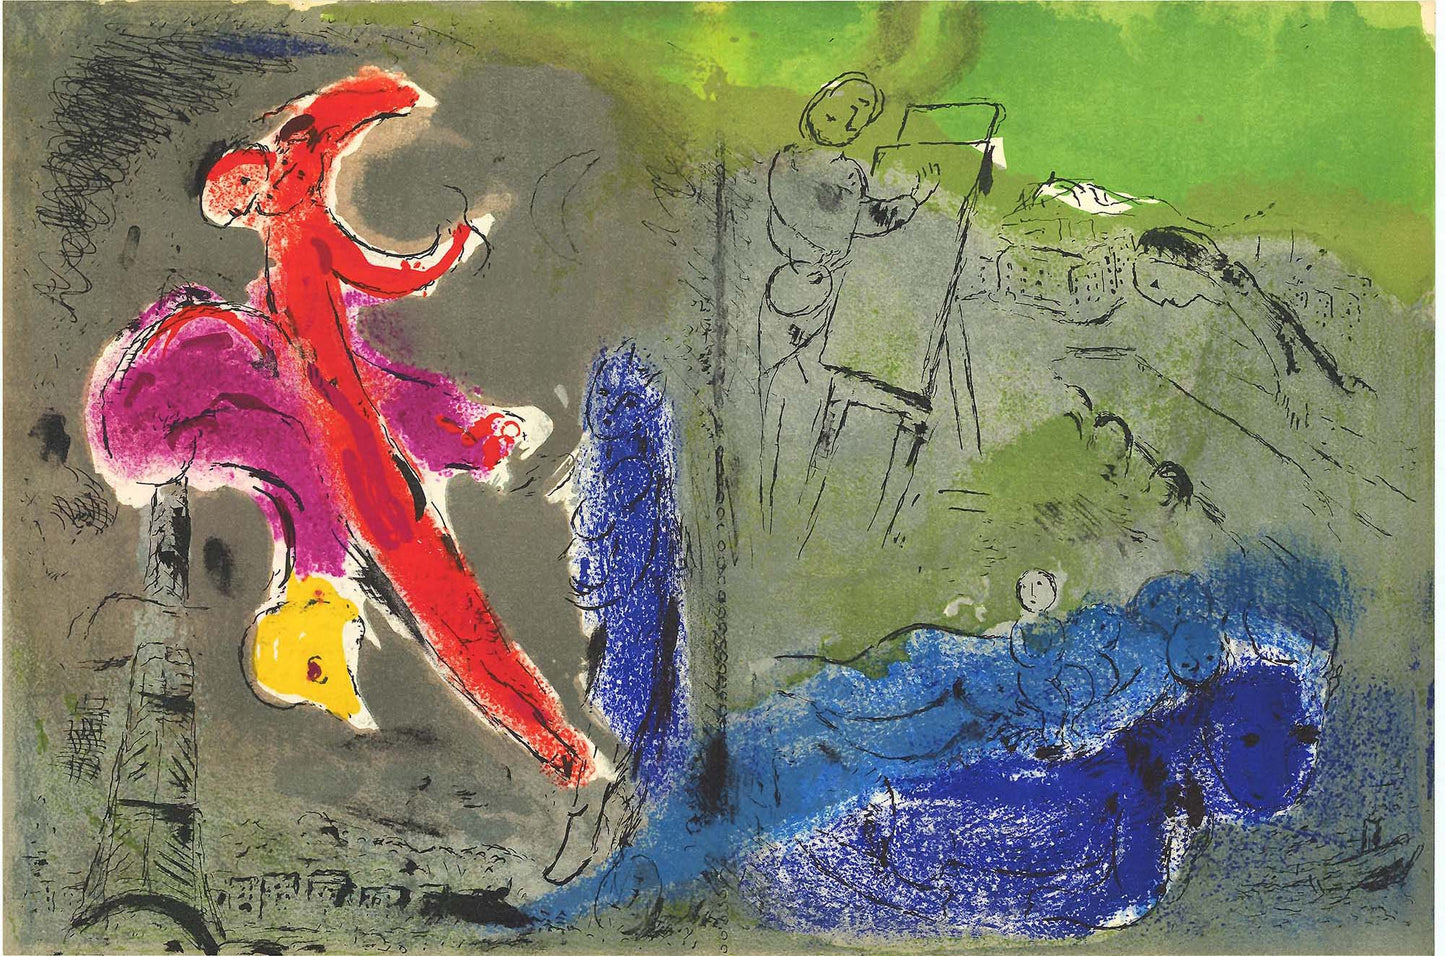 Marc Chagall; Vision de Paris: Le peintre, ses modeles, la Tour Eiffel lithograph  Verve – Vol 7. No. 27